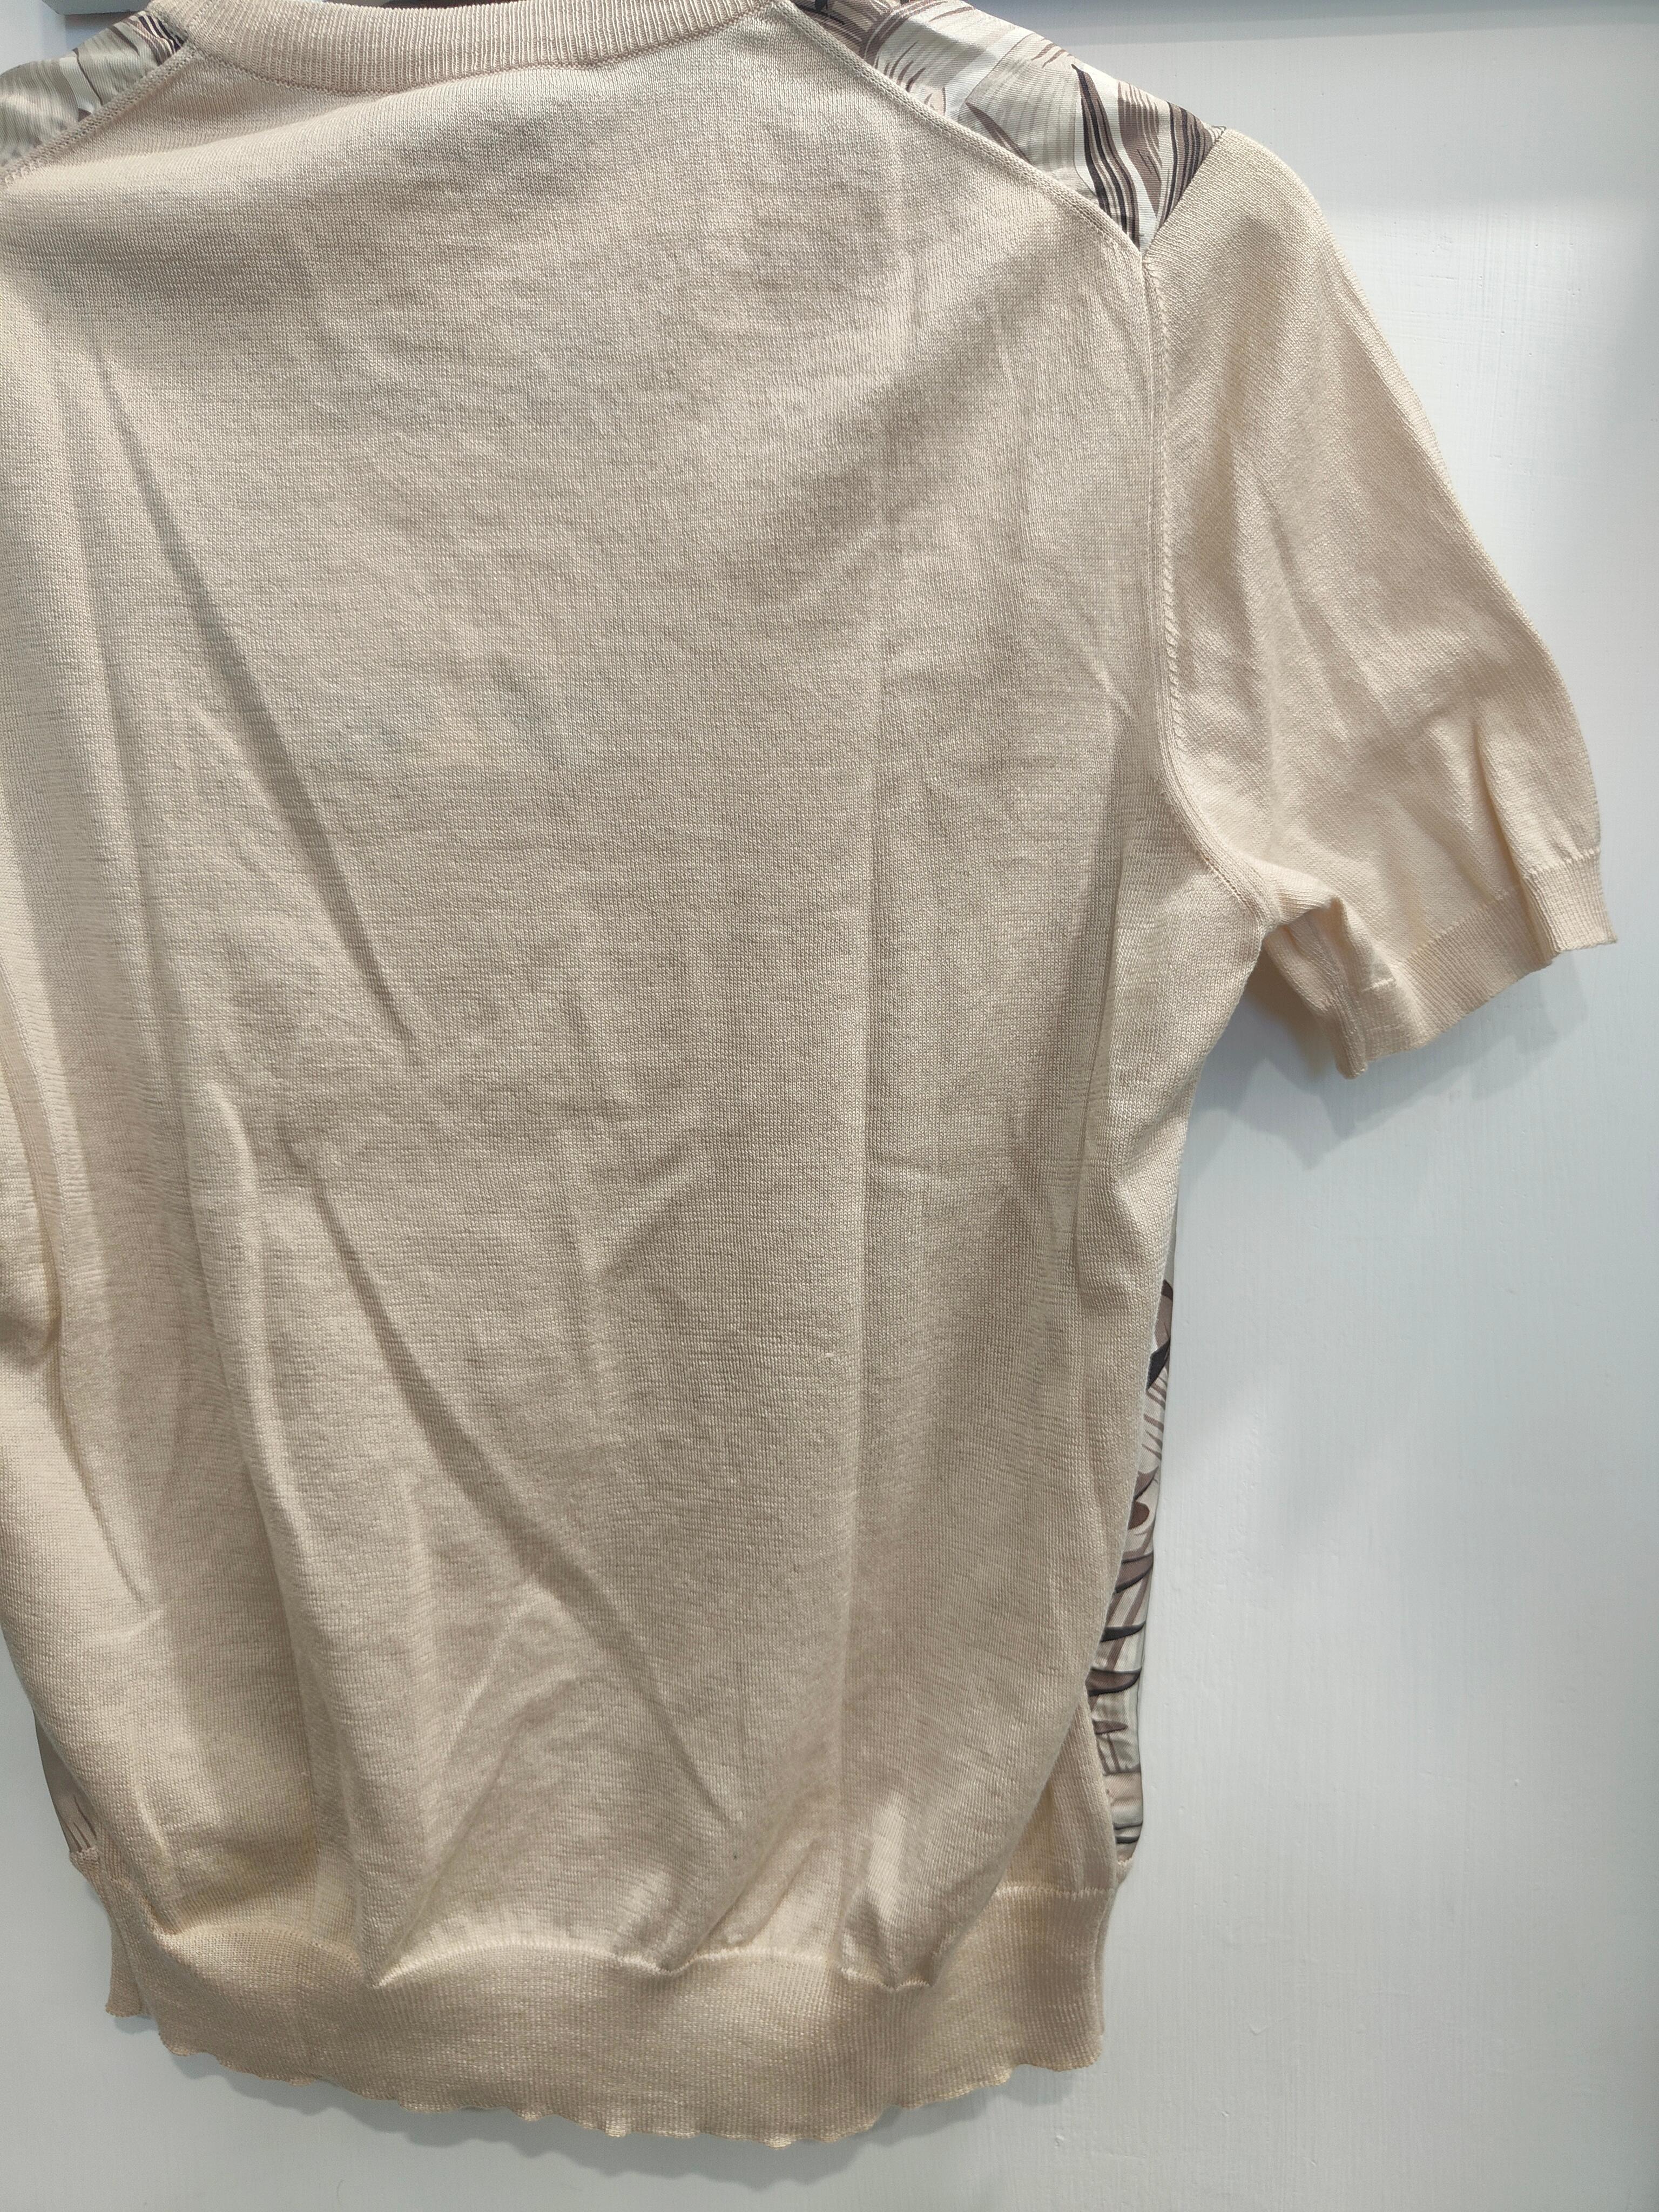 Salvatore Ferragamo silk blouse In Excellent Condition For Sale In Capri, IT